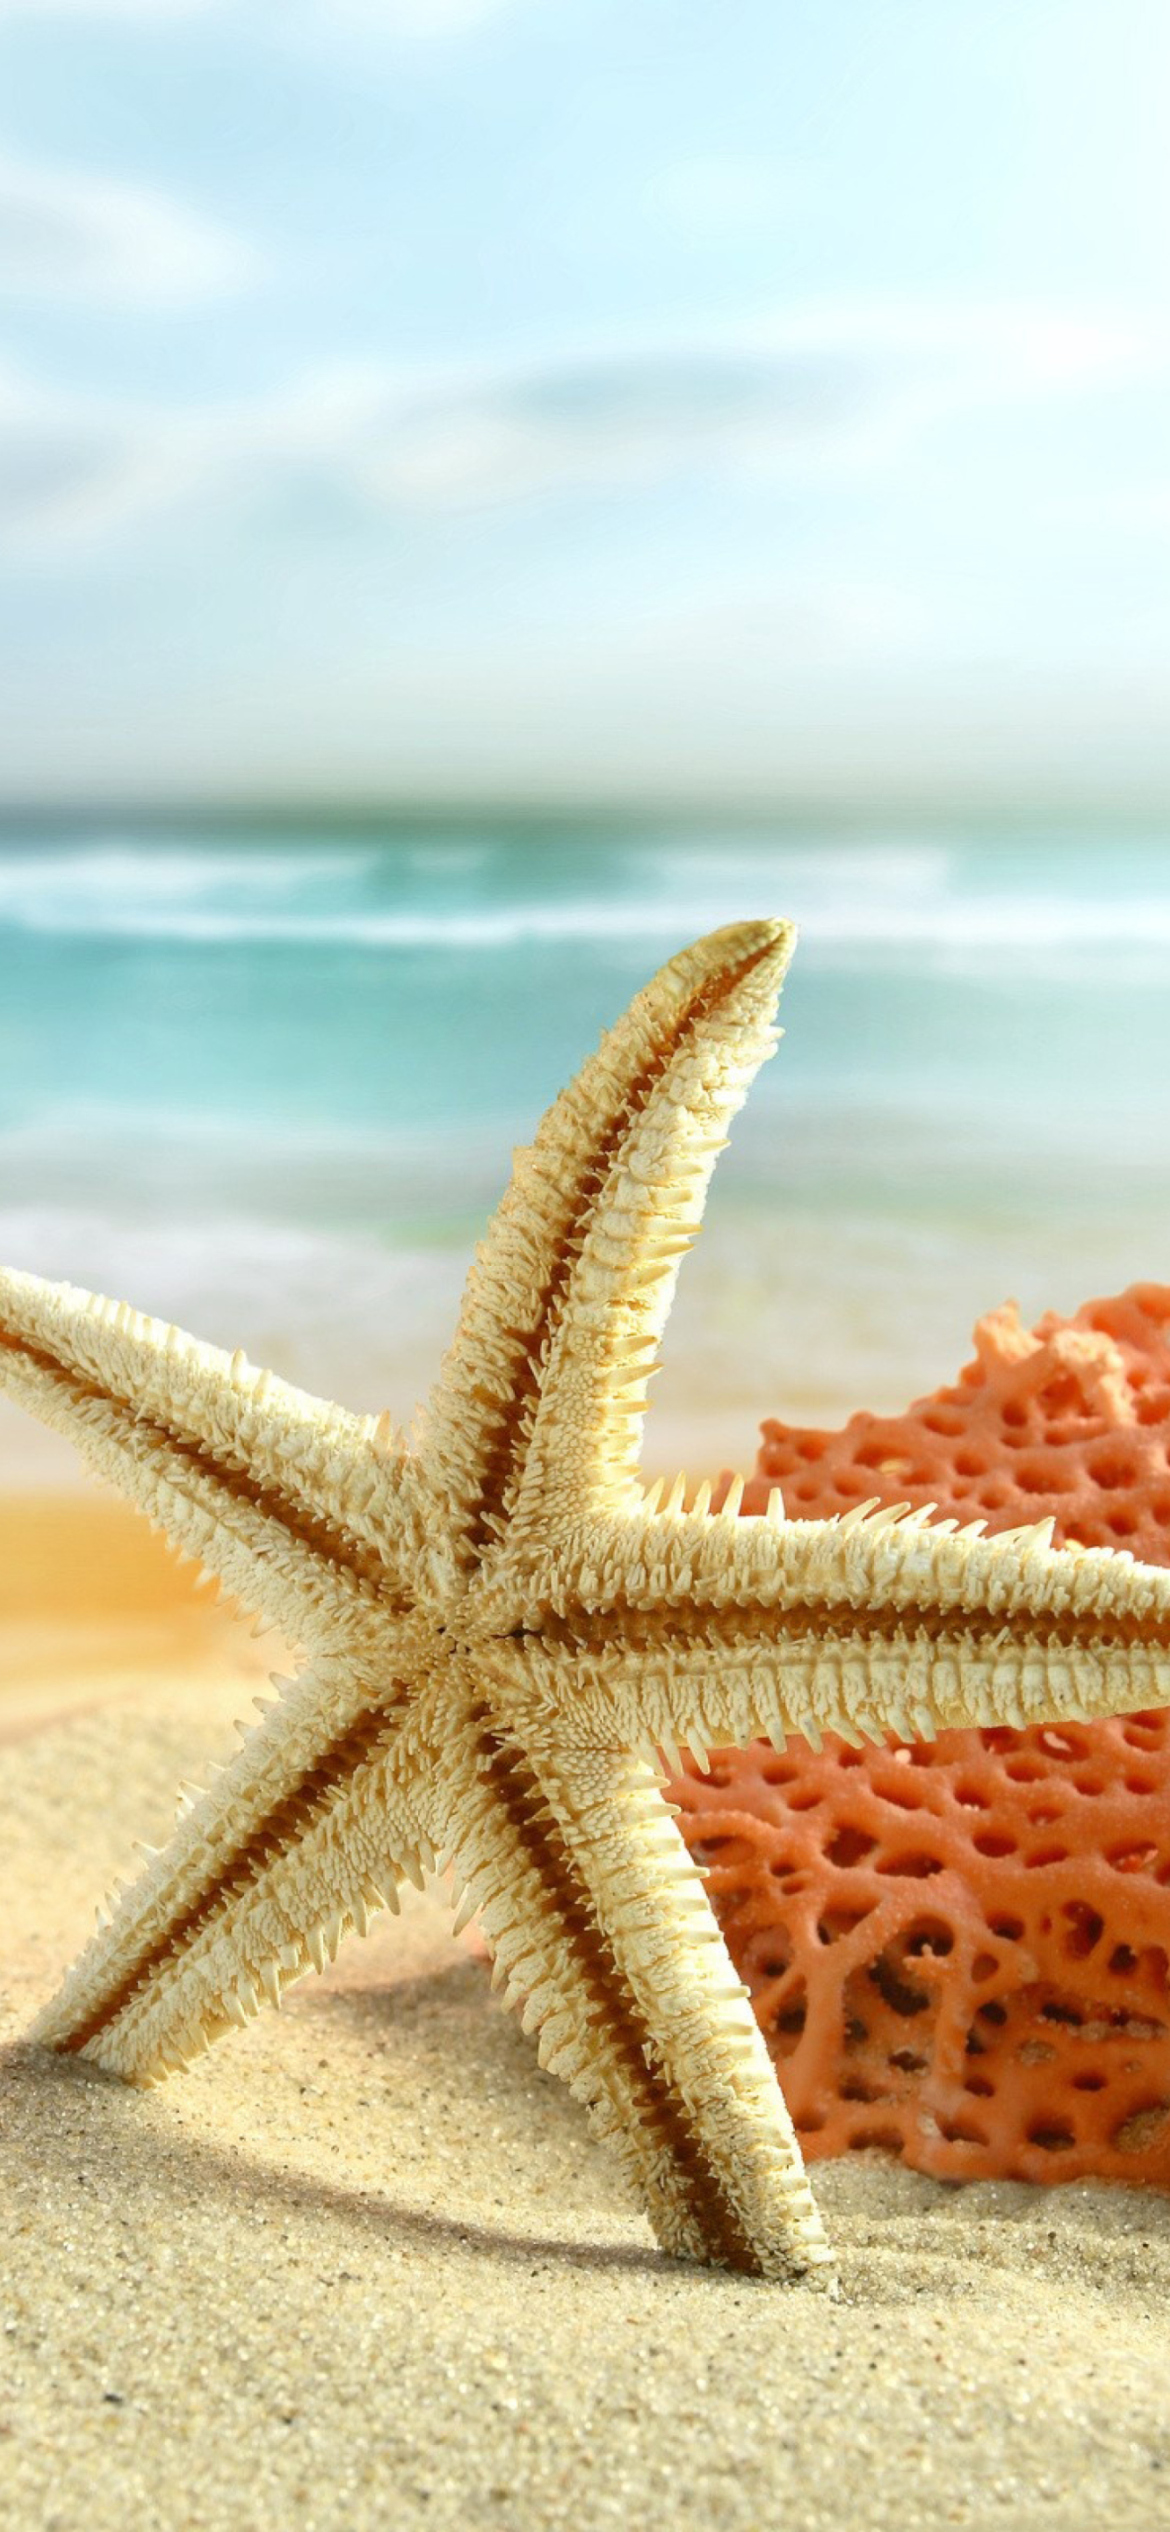 Starfish On Beach screenshot #1 1170x2532